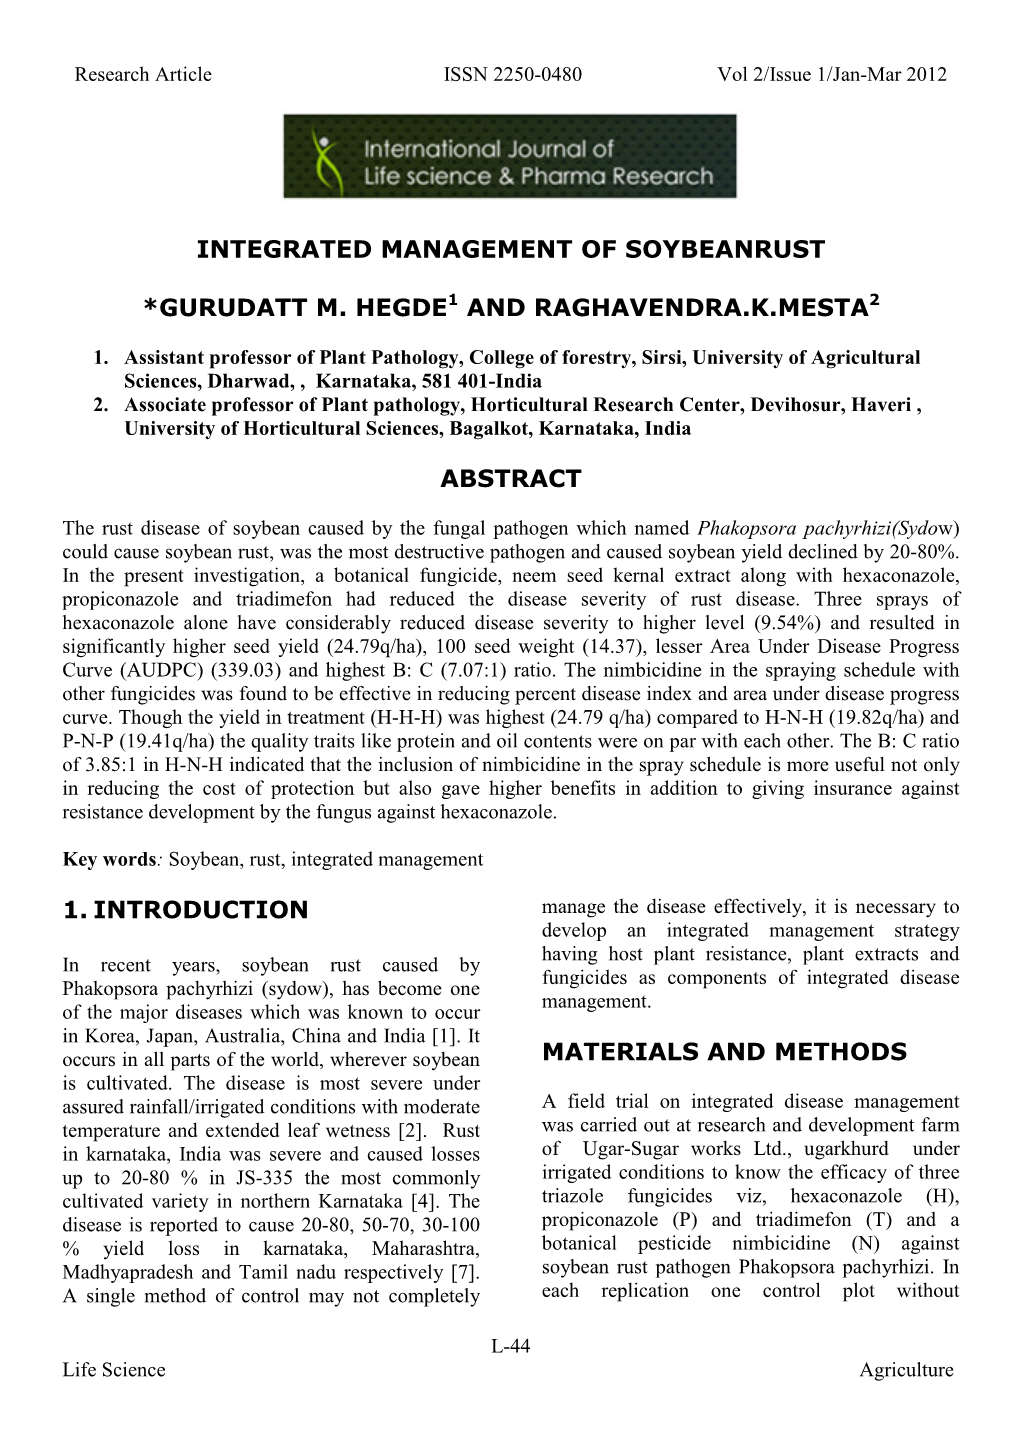 Integrated Management of Soybeanrust *Gurudatt M. Hegde1